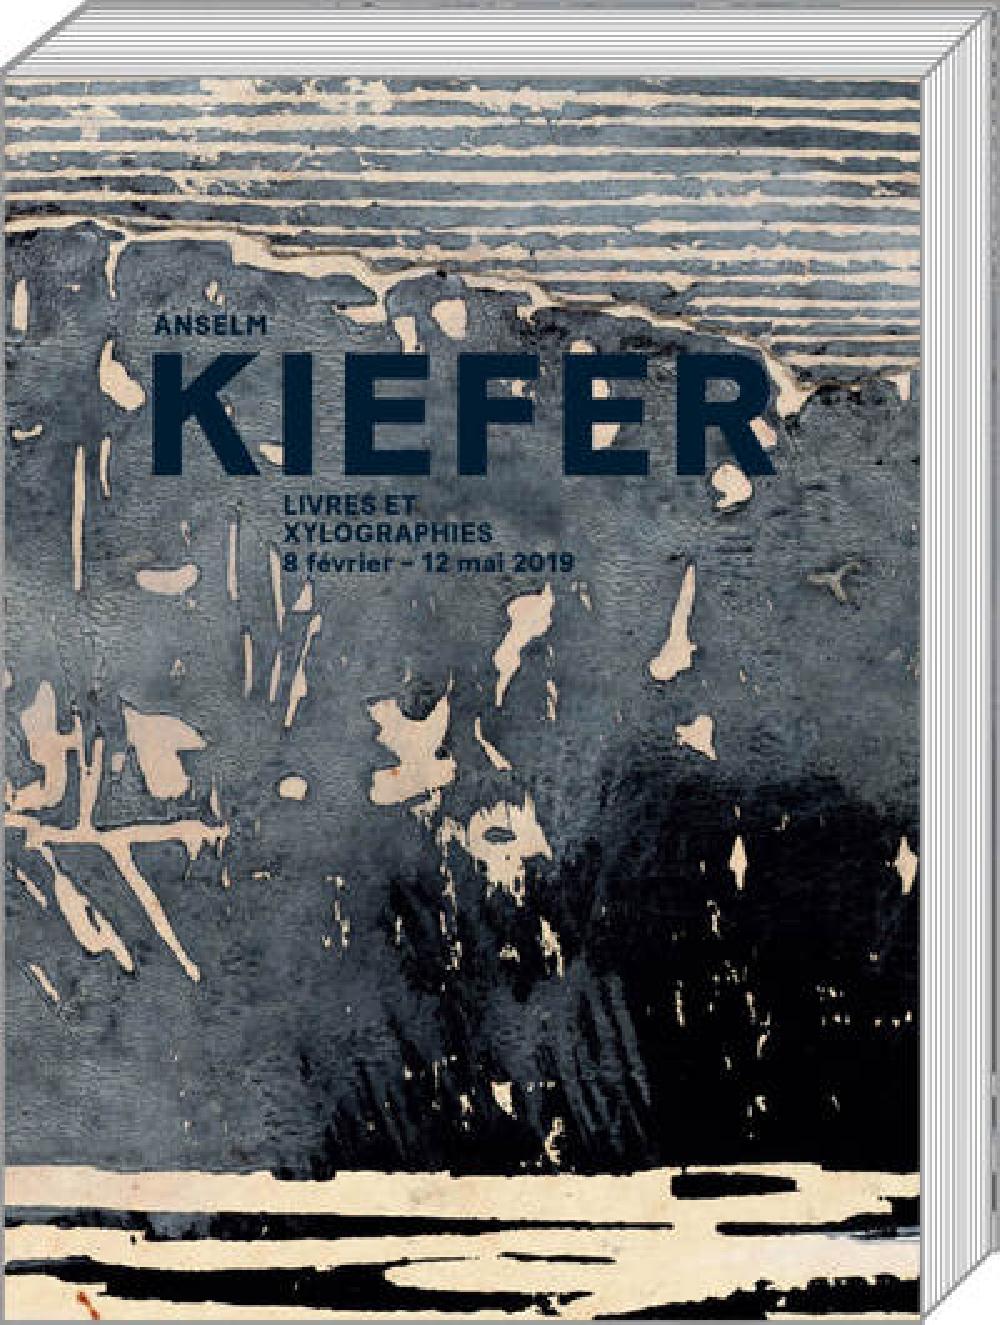 Anselm Kiefer - Livres et xylographies 